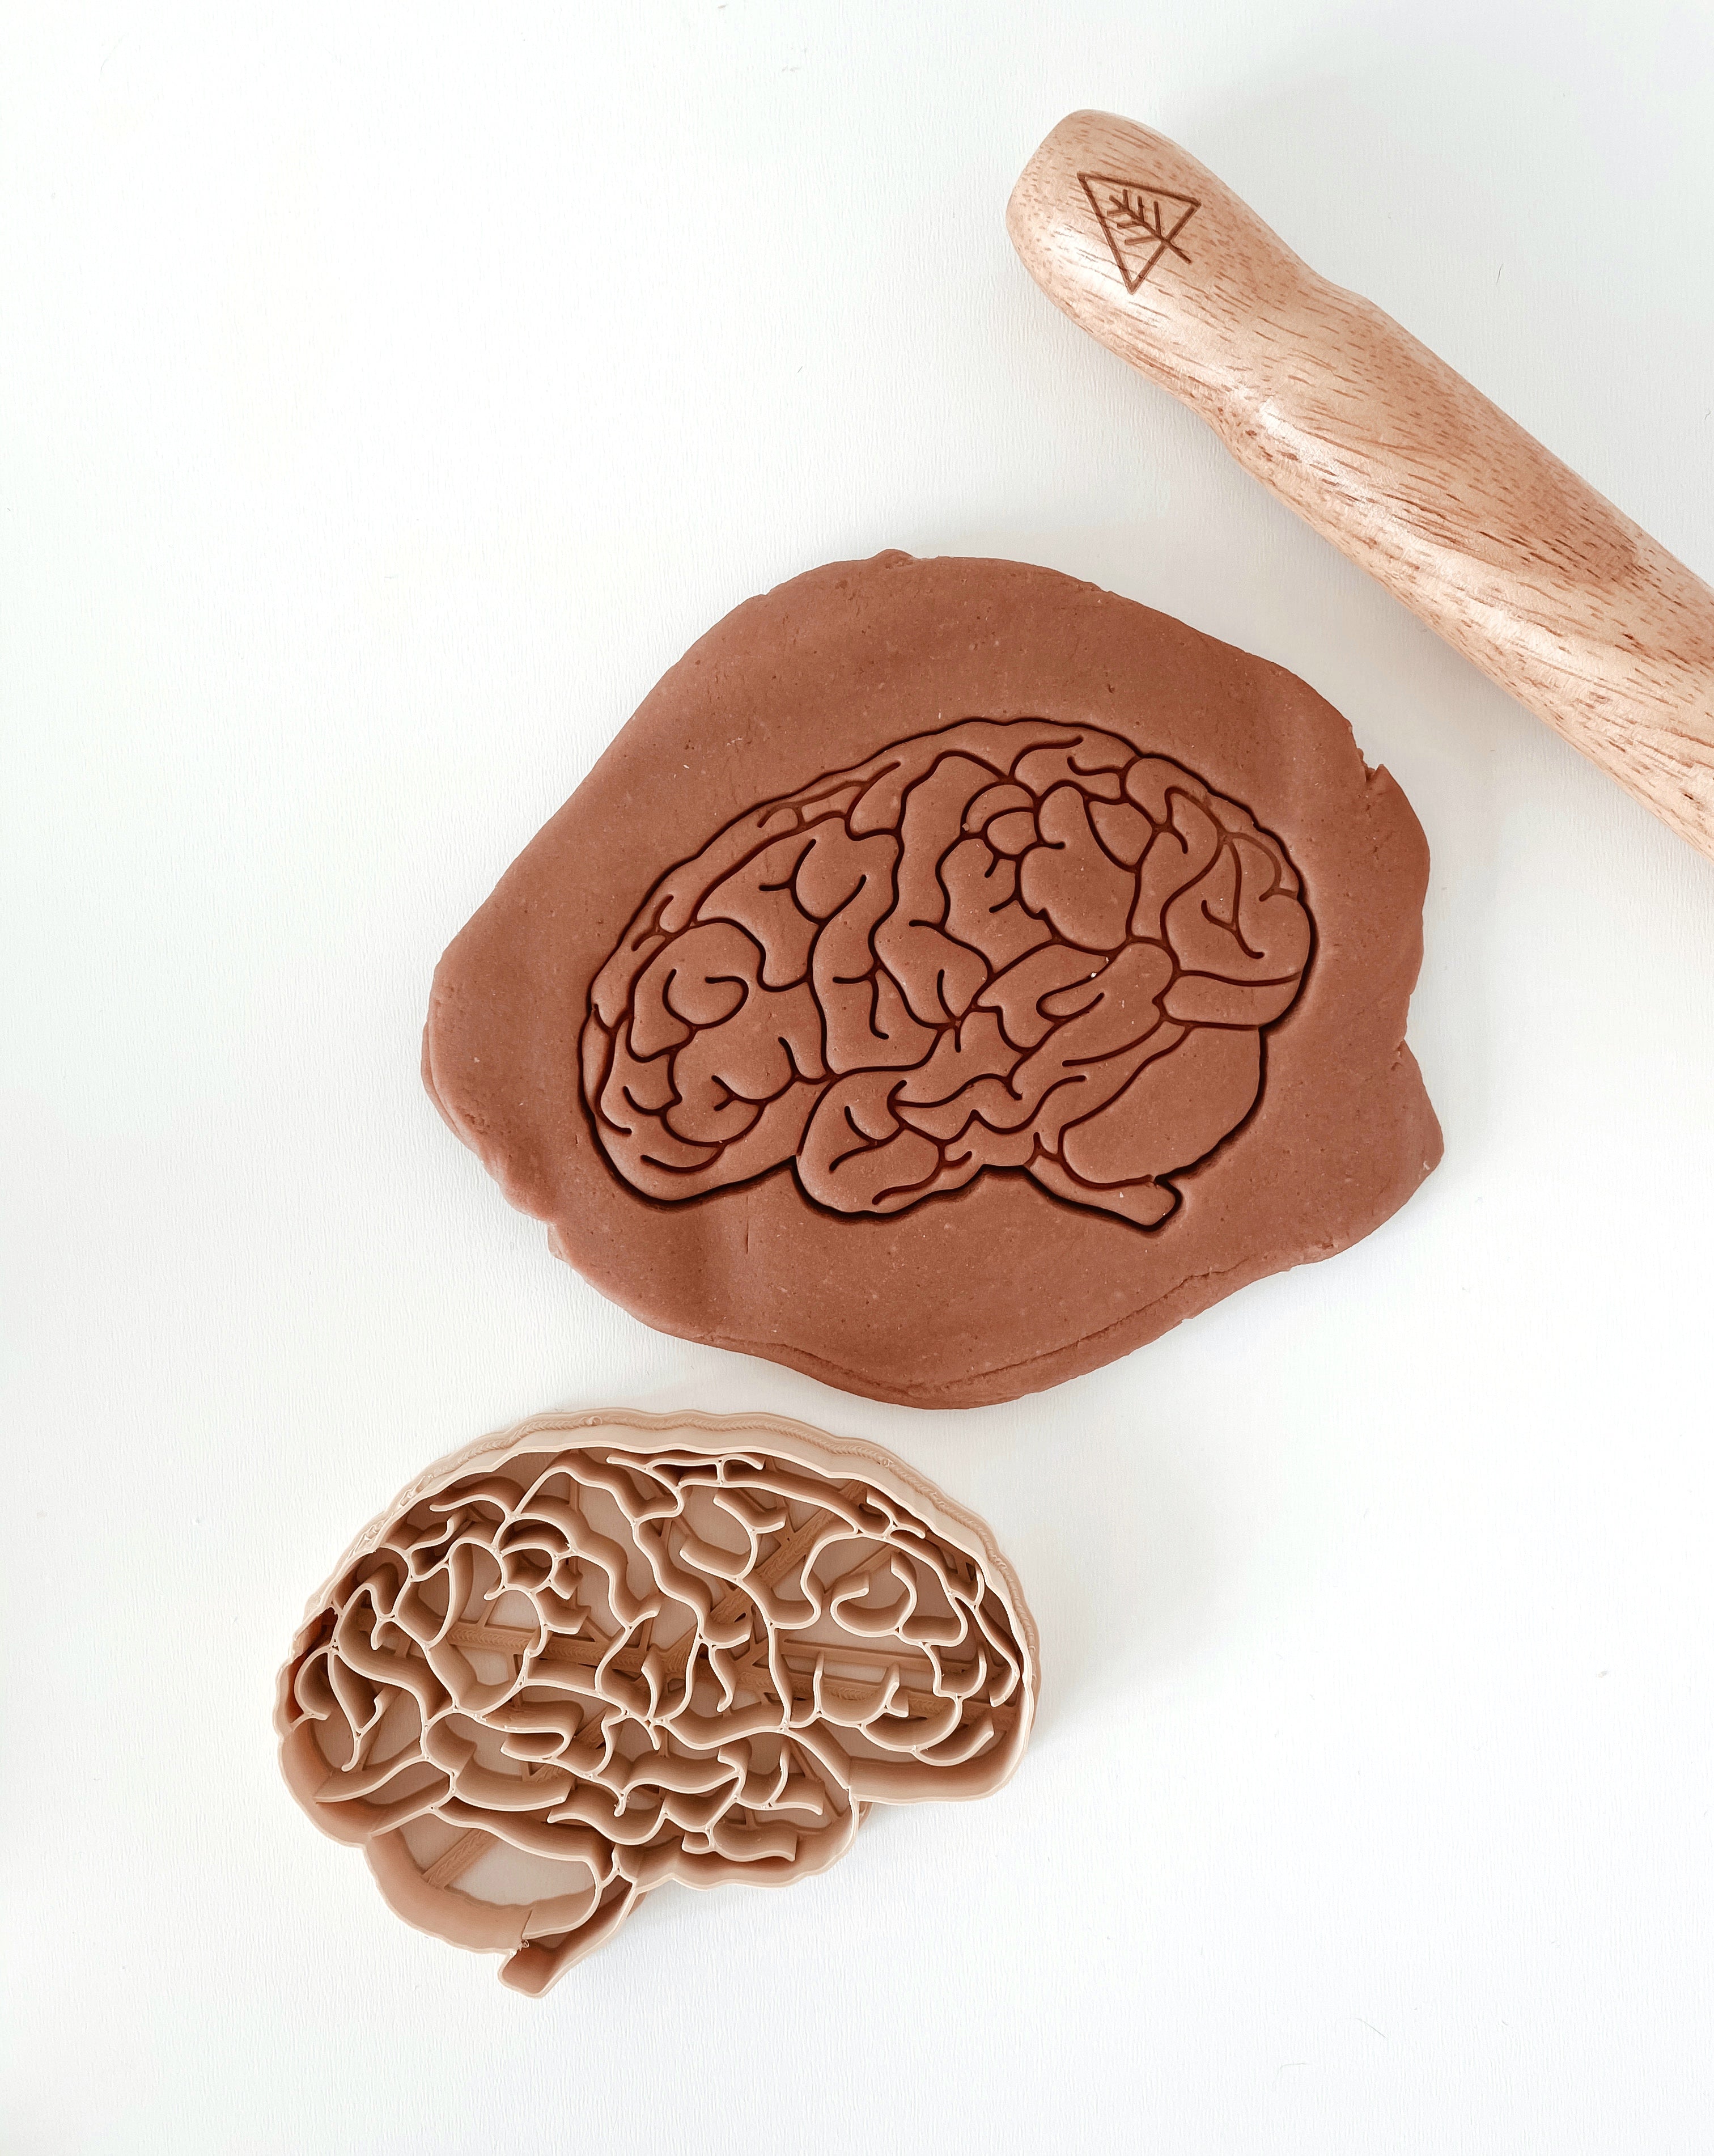 Bio Dough Cutter - Brain